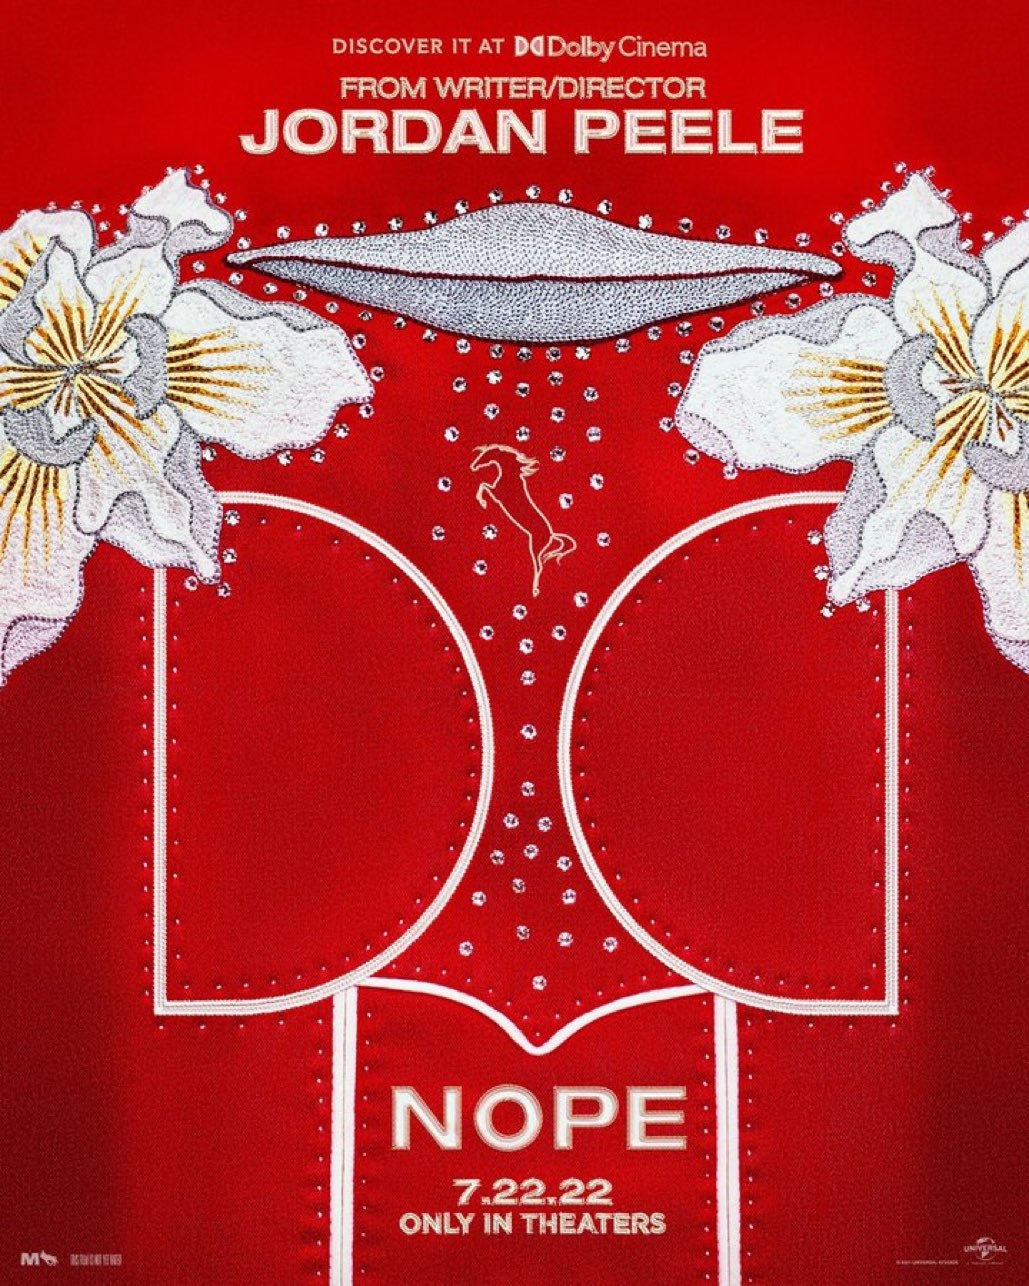 "Нет" Джордана Пила получил специальный постер от Dolby Cinema